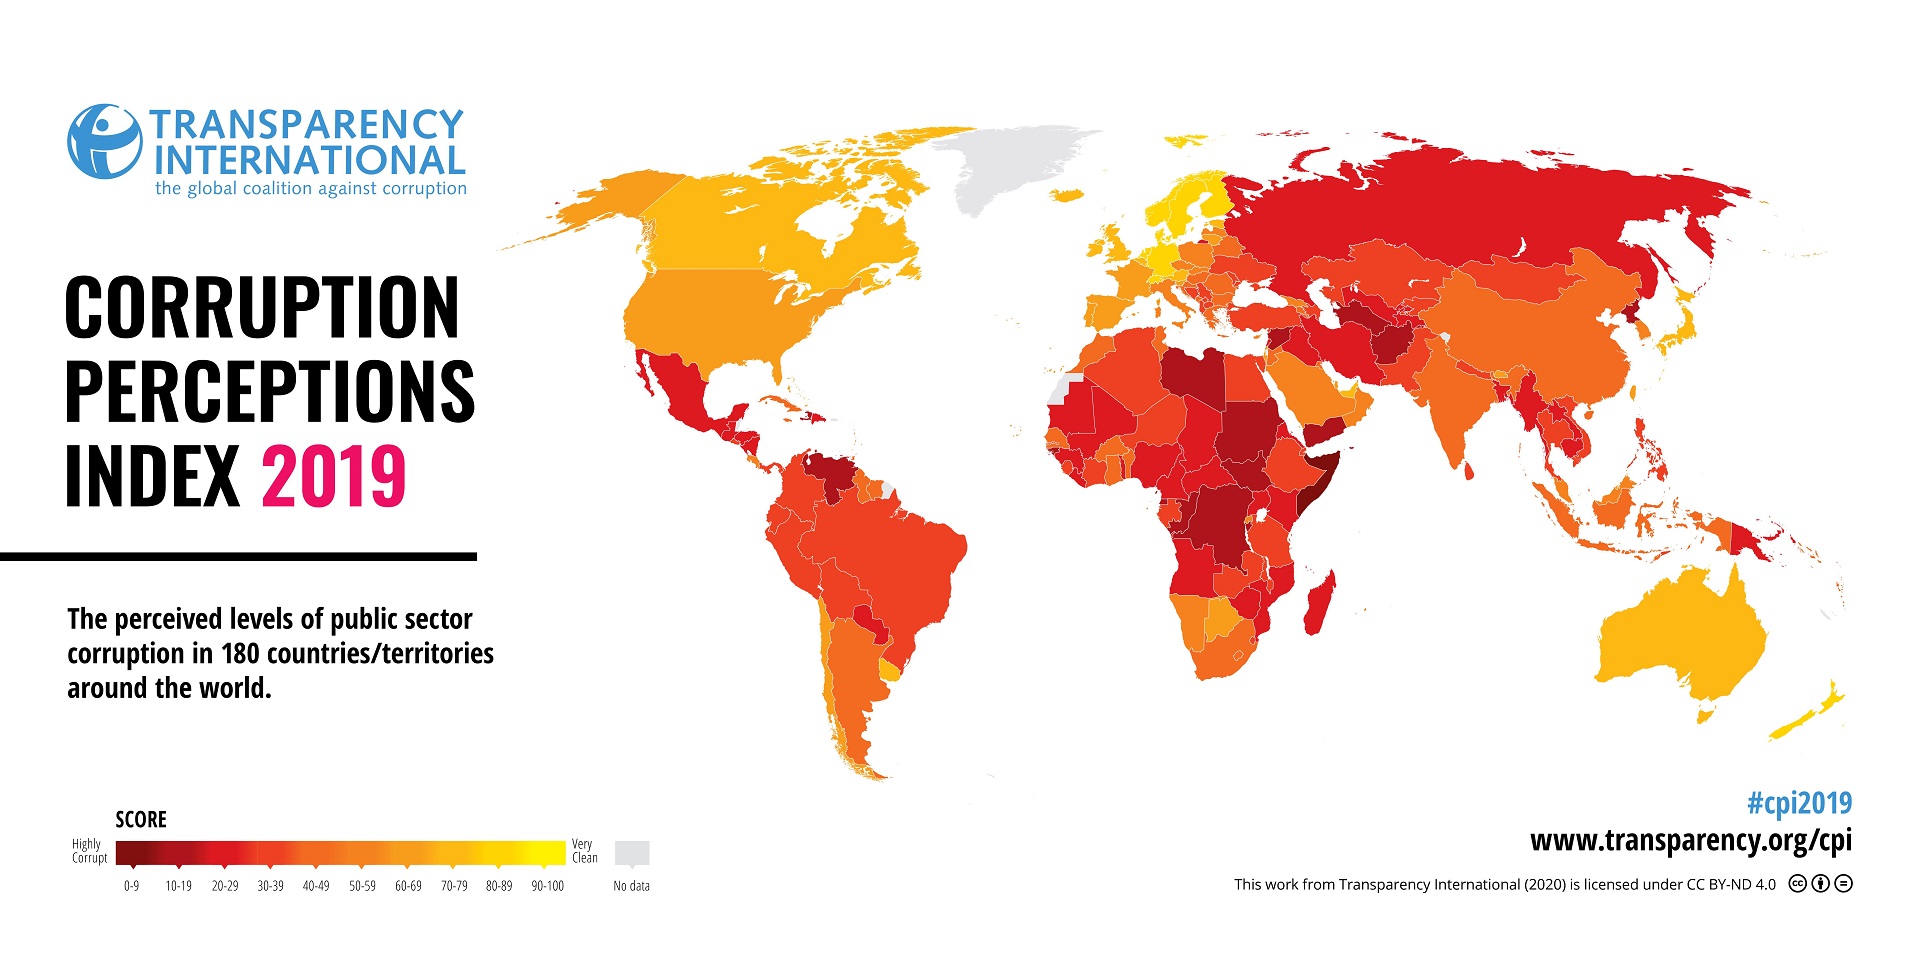 PRESSEINFO: Corruption Perceptions Index (CPI) 2019